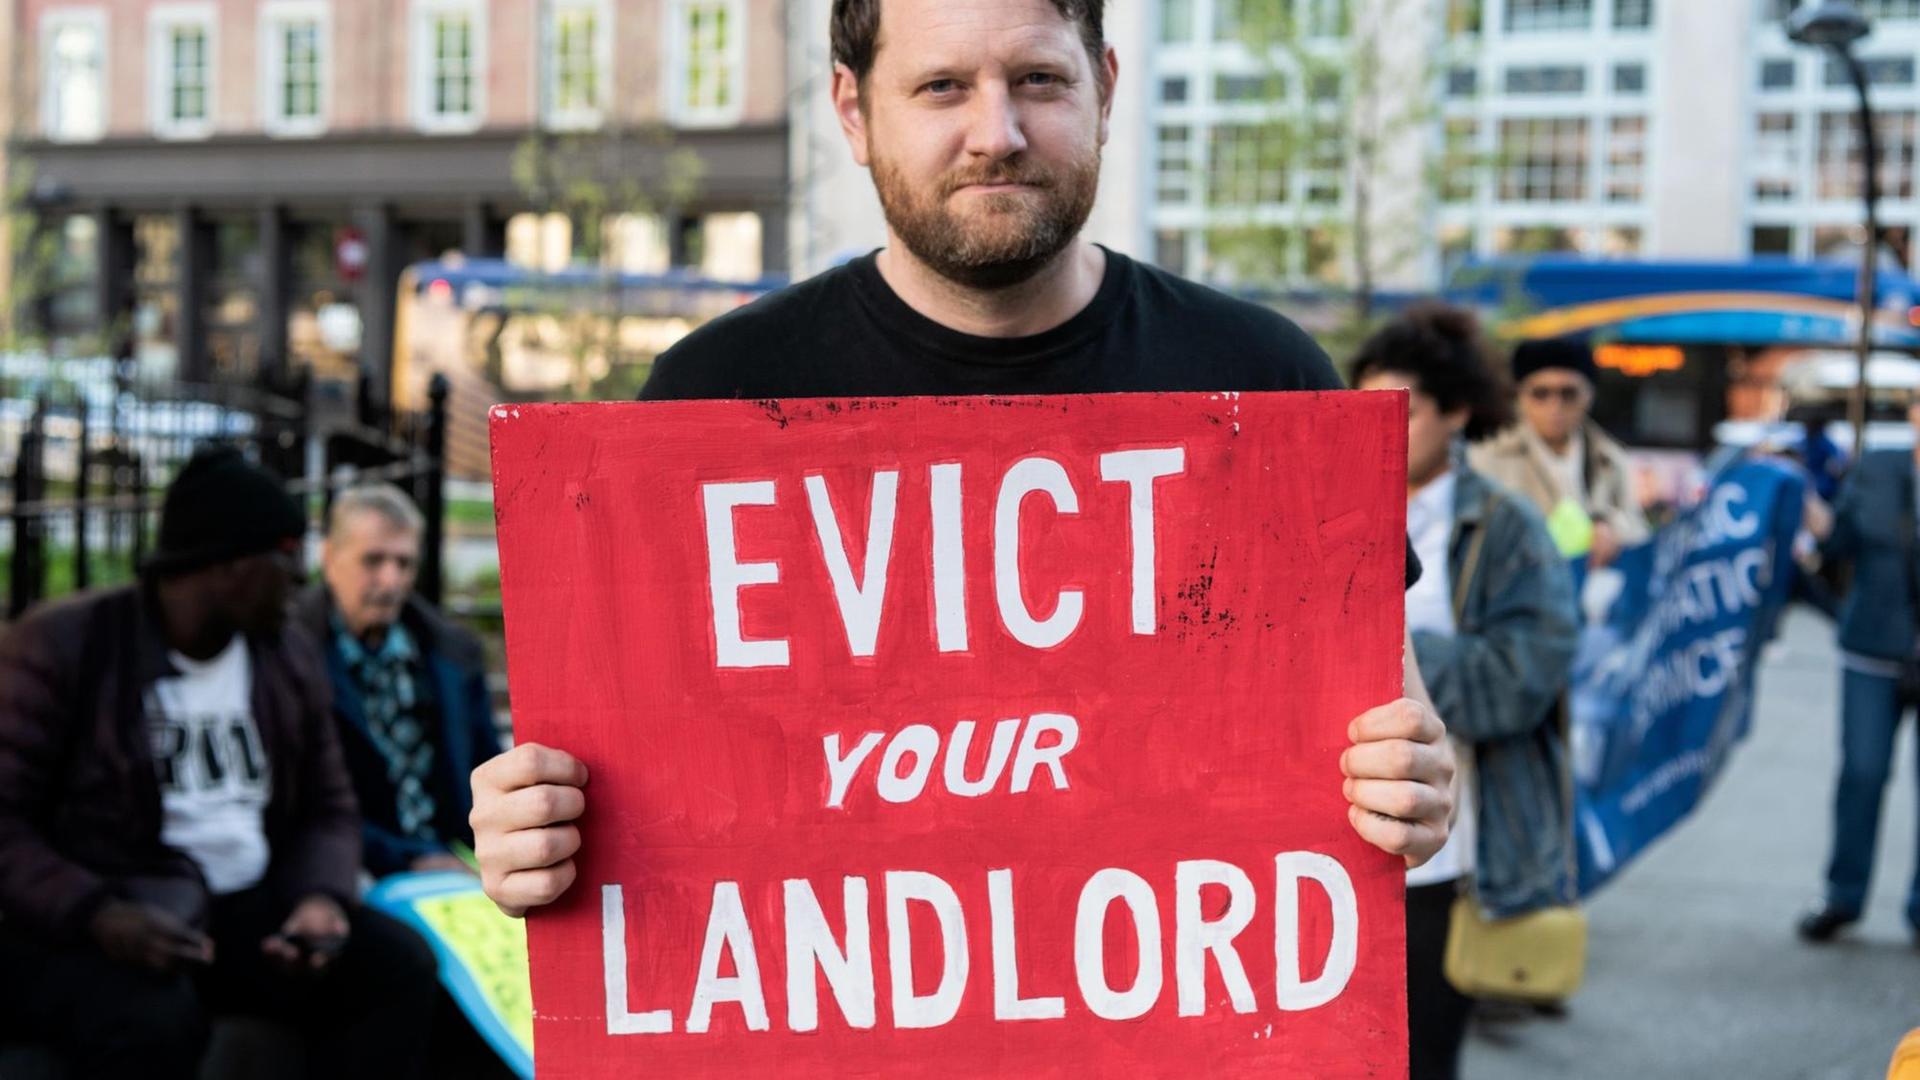 Ein Mann hält ein Schild auf dem steht "Evict you Landlord".